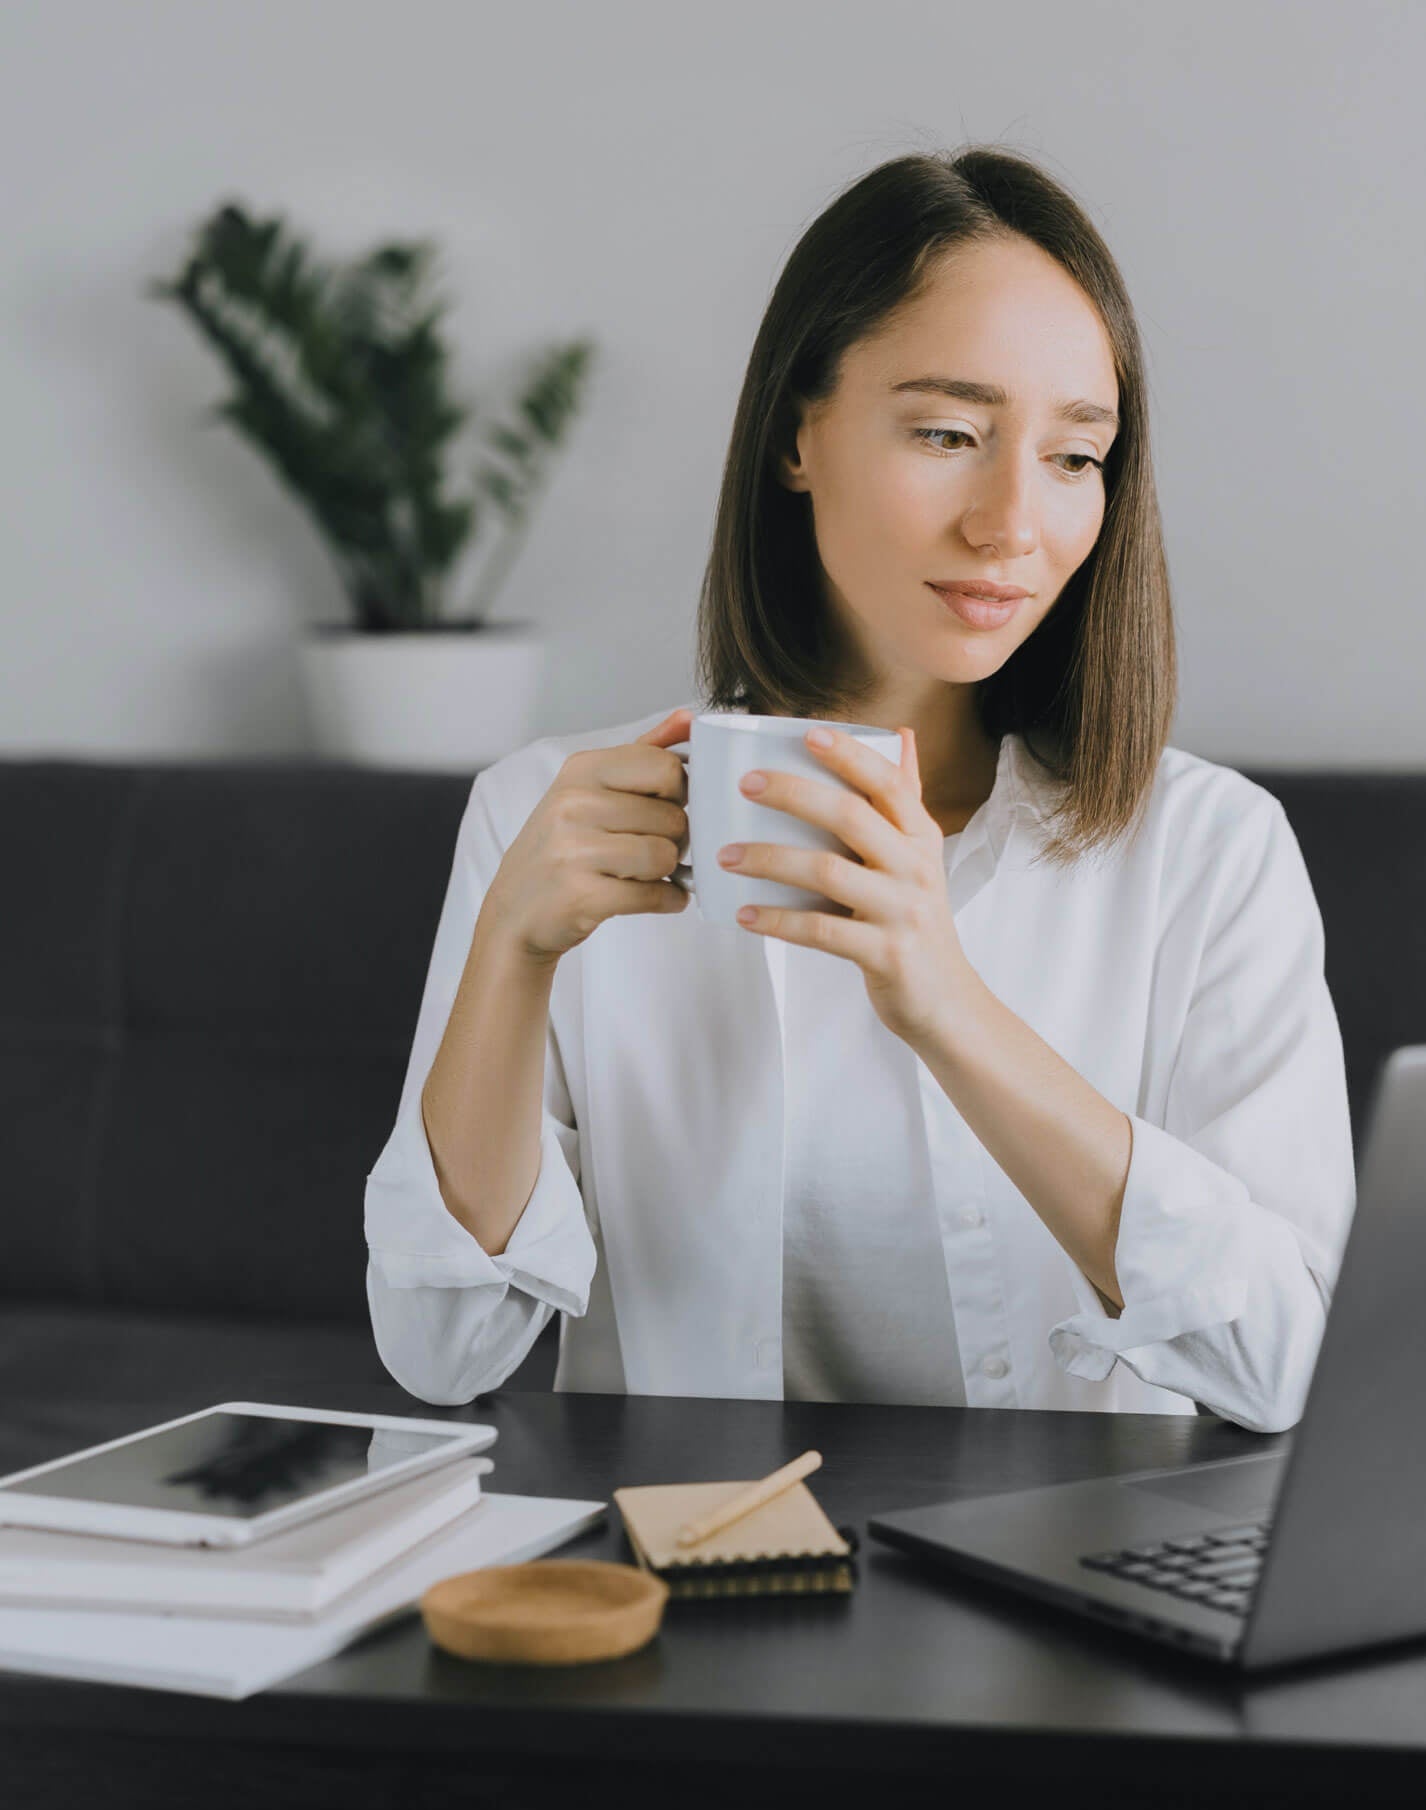 Une femme boit un café et regarde son CV en ligne sur un ordinateur portable.